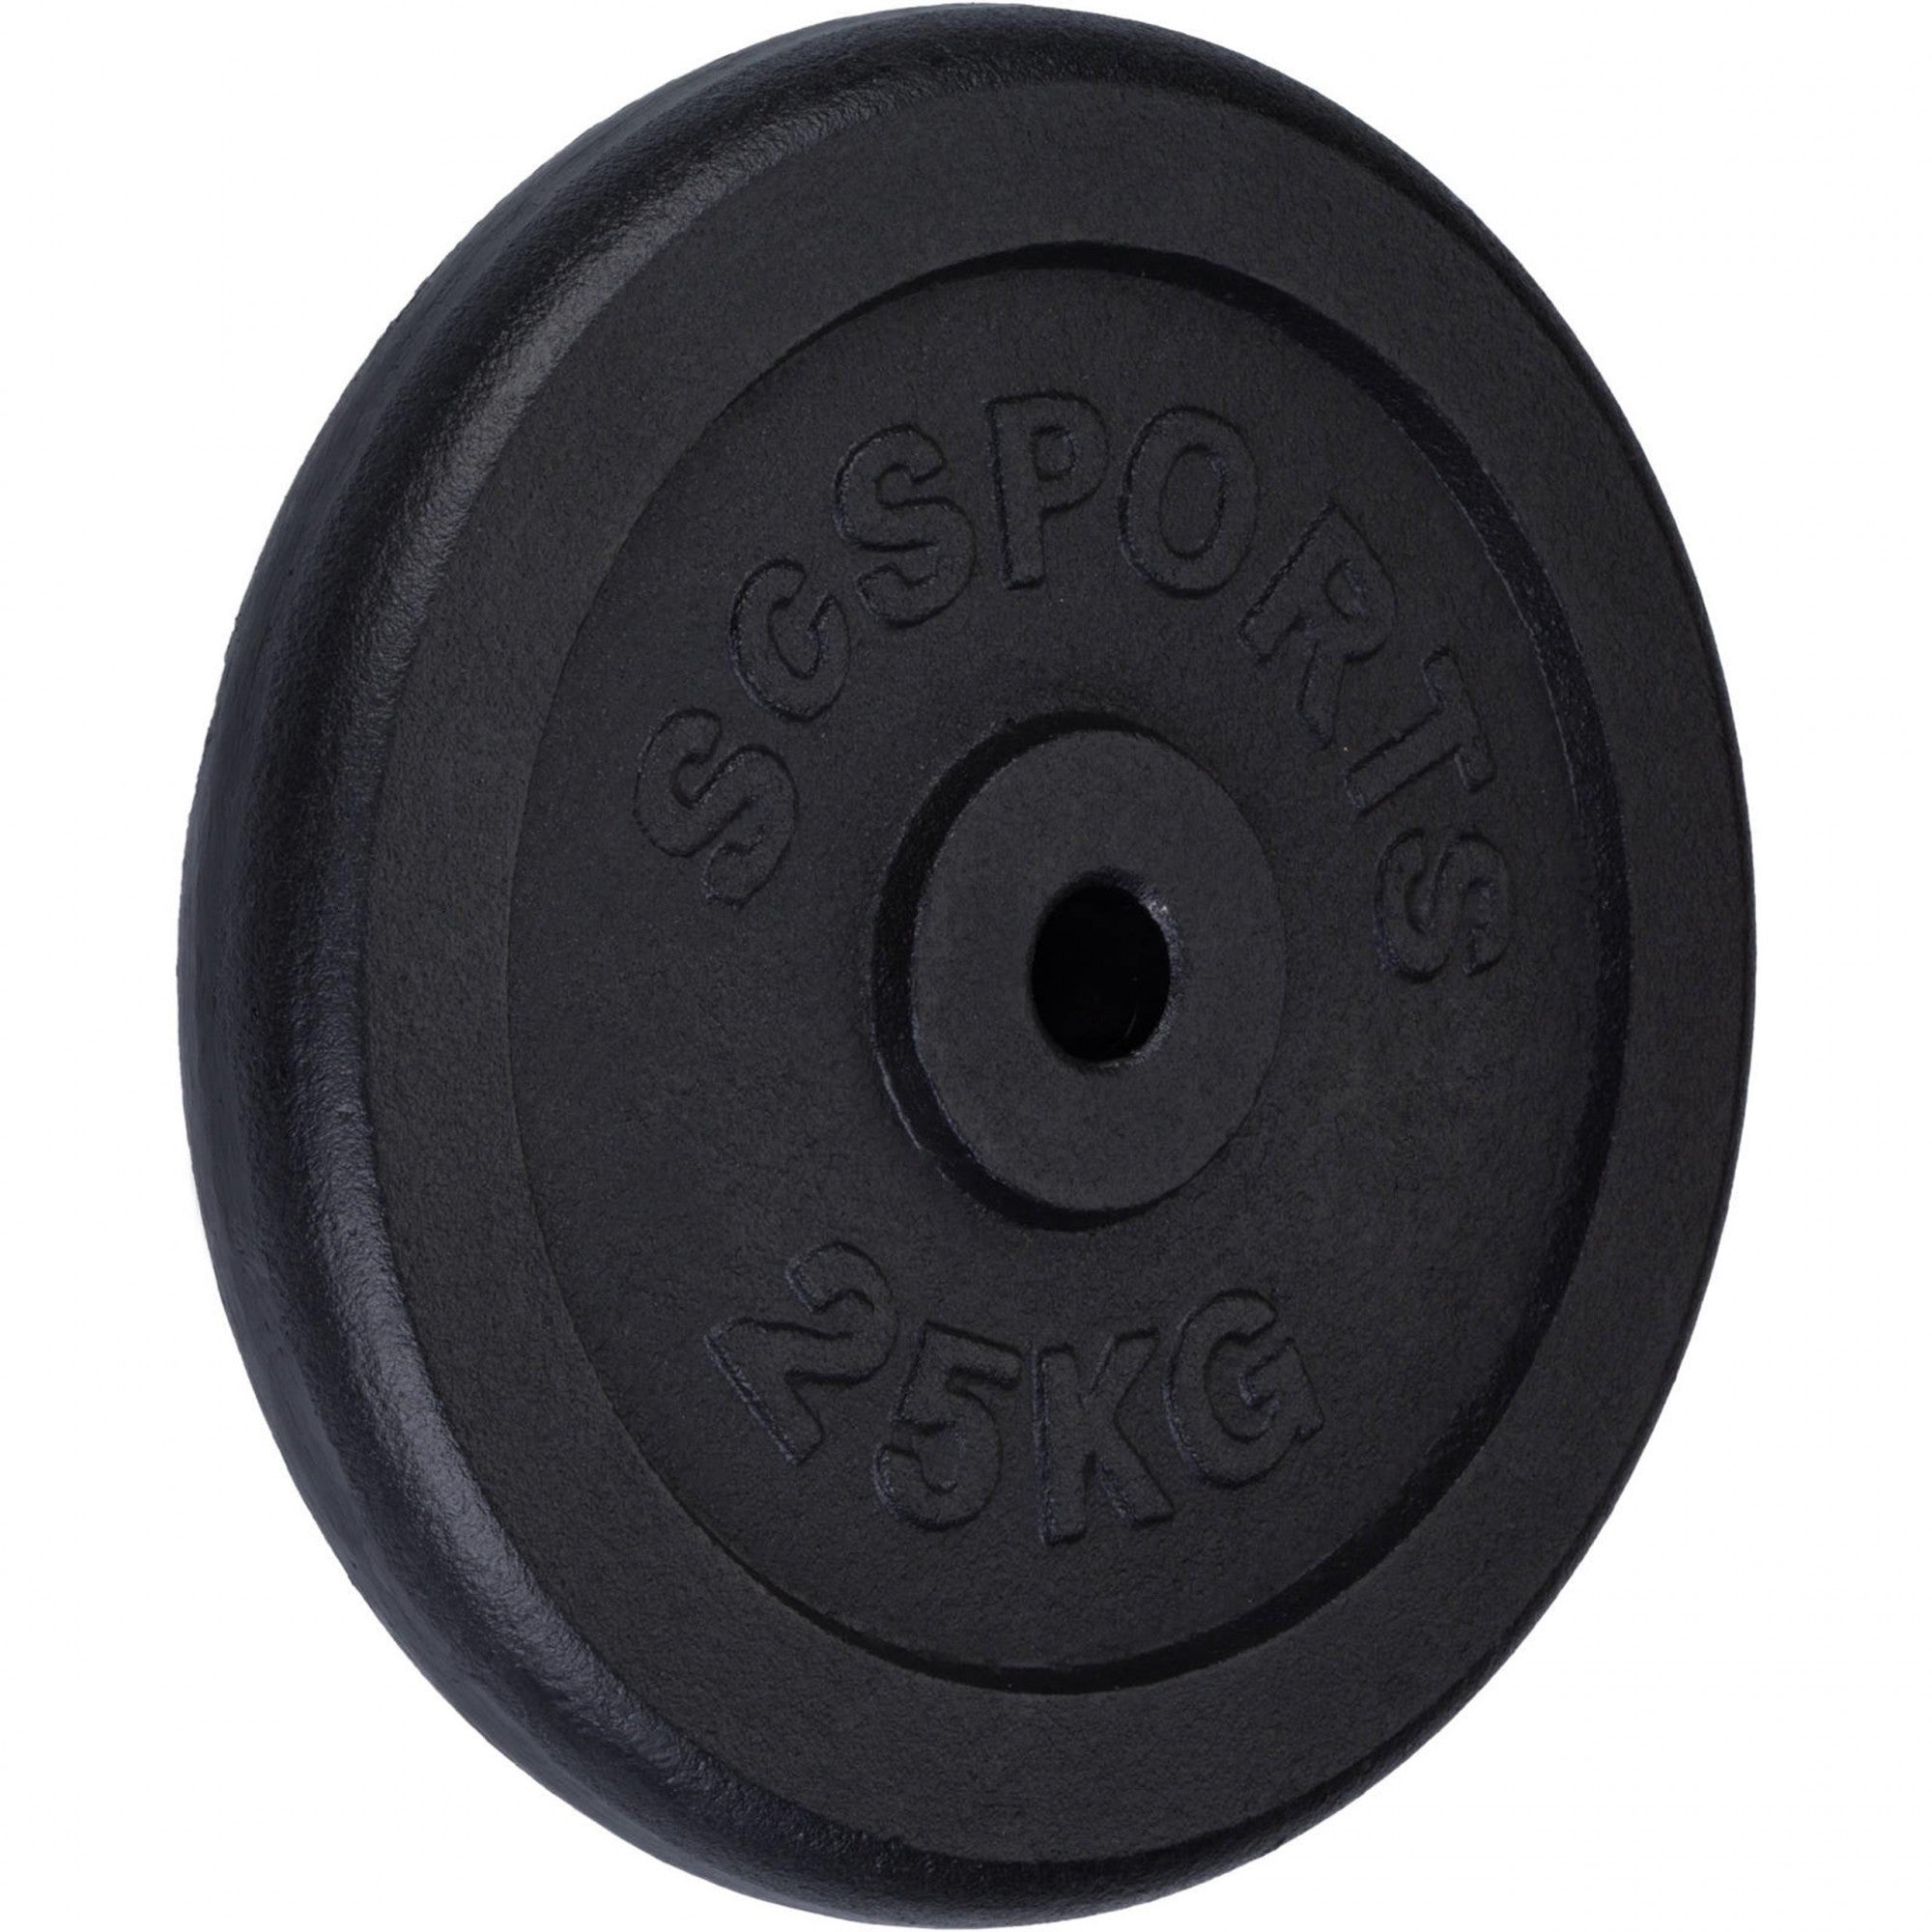 Vægtskiver – enkelt, 25 kg, Ø 30/31 mm, støbejern, sort